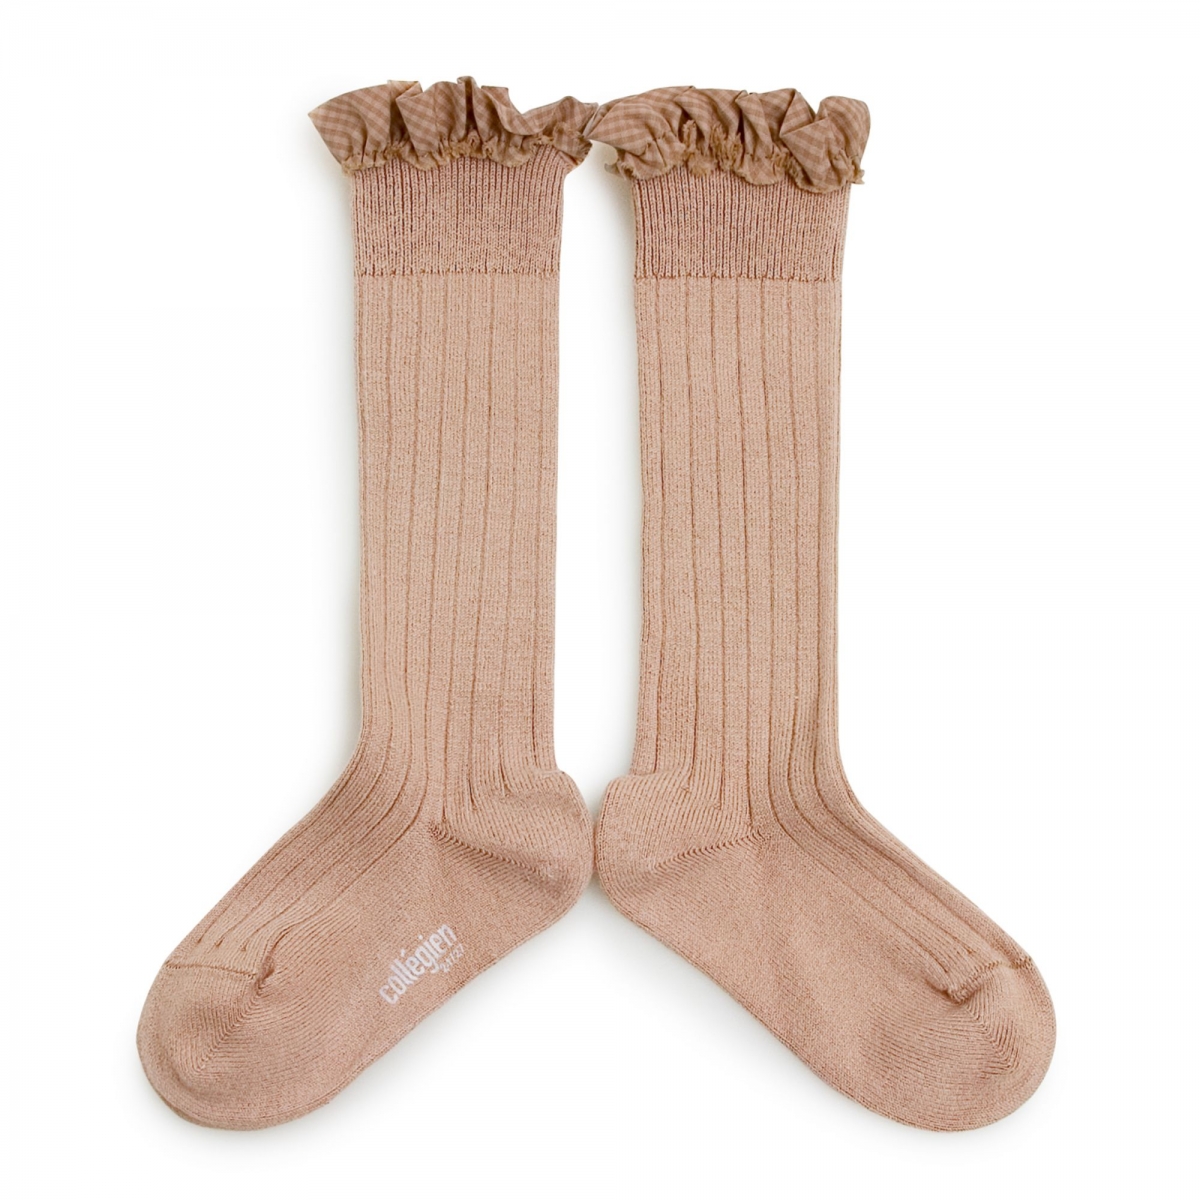 Collégien - Knee high socks Apolline vieux rose - Strumpfhosen und Socken - 2961 331 Apolline 